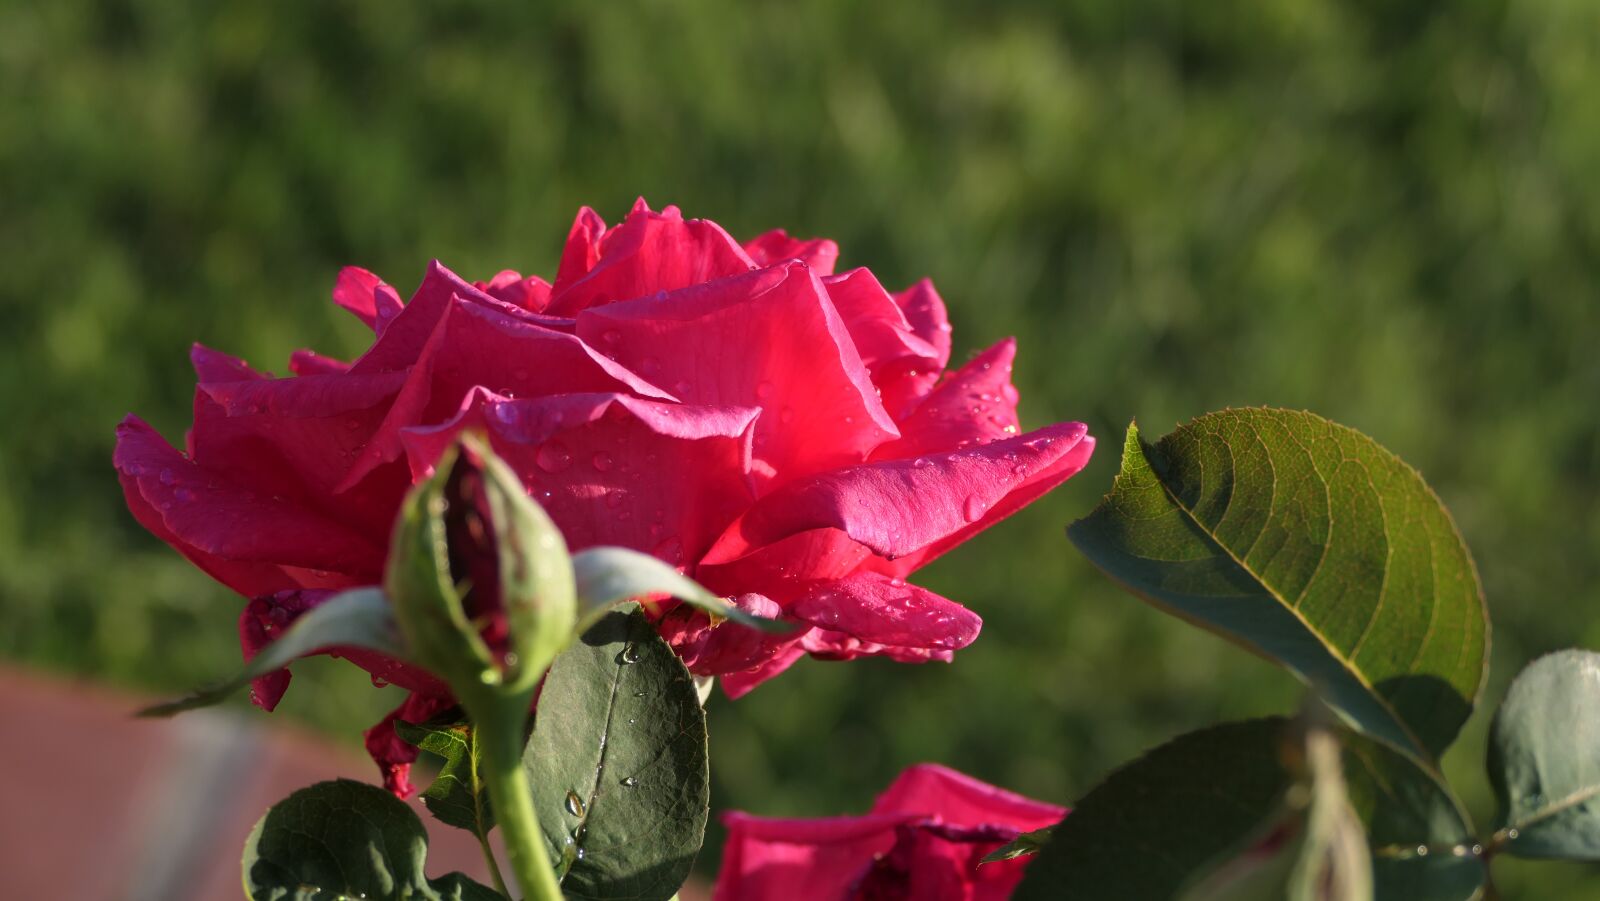 Panasonic DC-FZ10002 sample photo. Rose, petals, pink rose photography